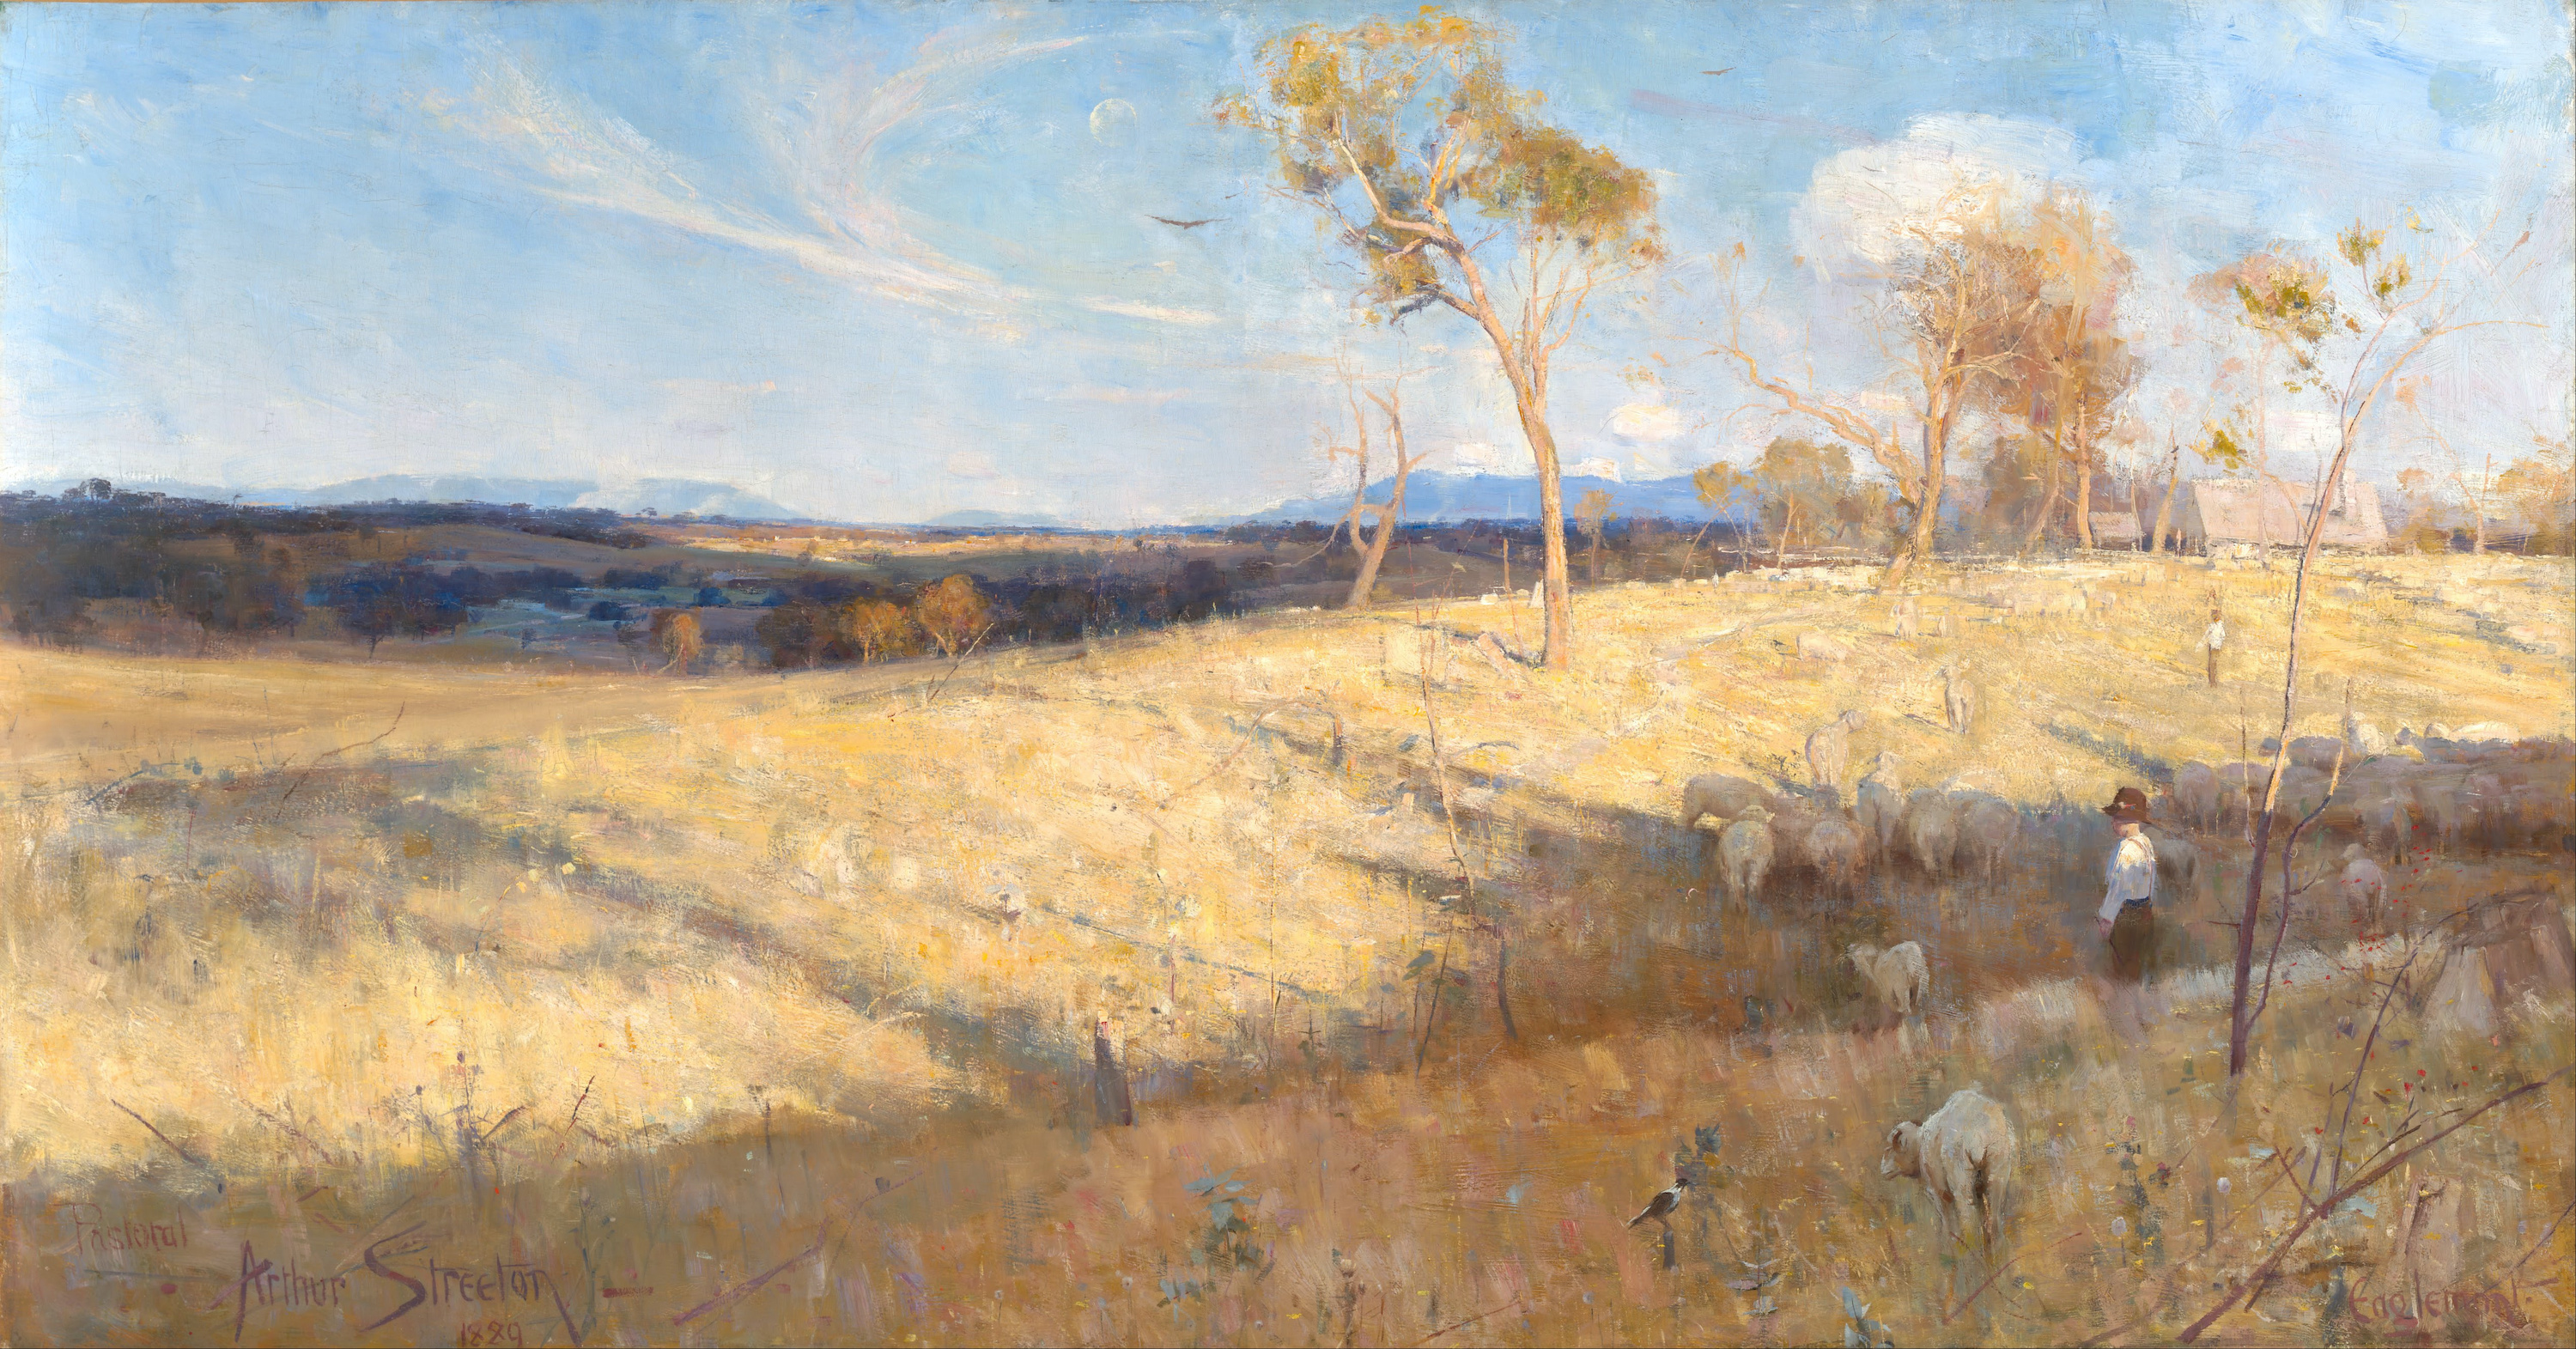 Goldener Sommer, Eaglemont by Arthur Streeton - 1889 - 81.3 × 152.6 cm National Gallery of Australia